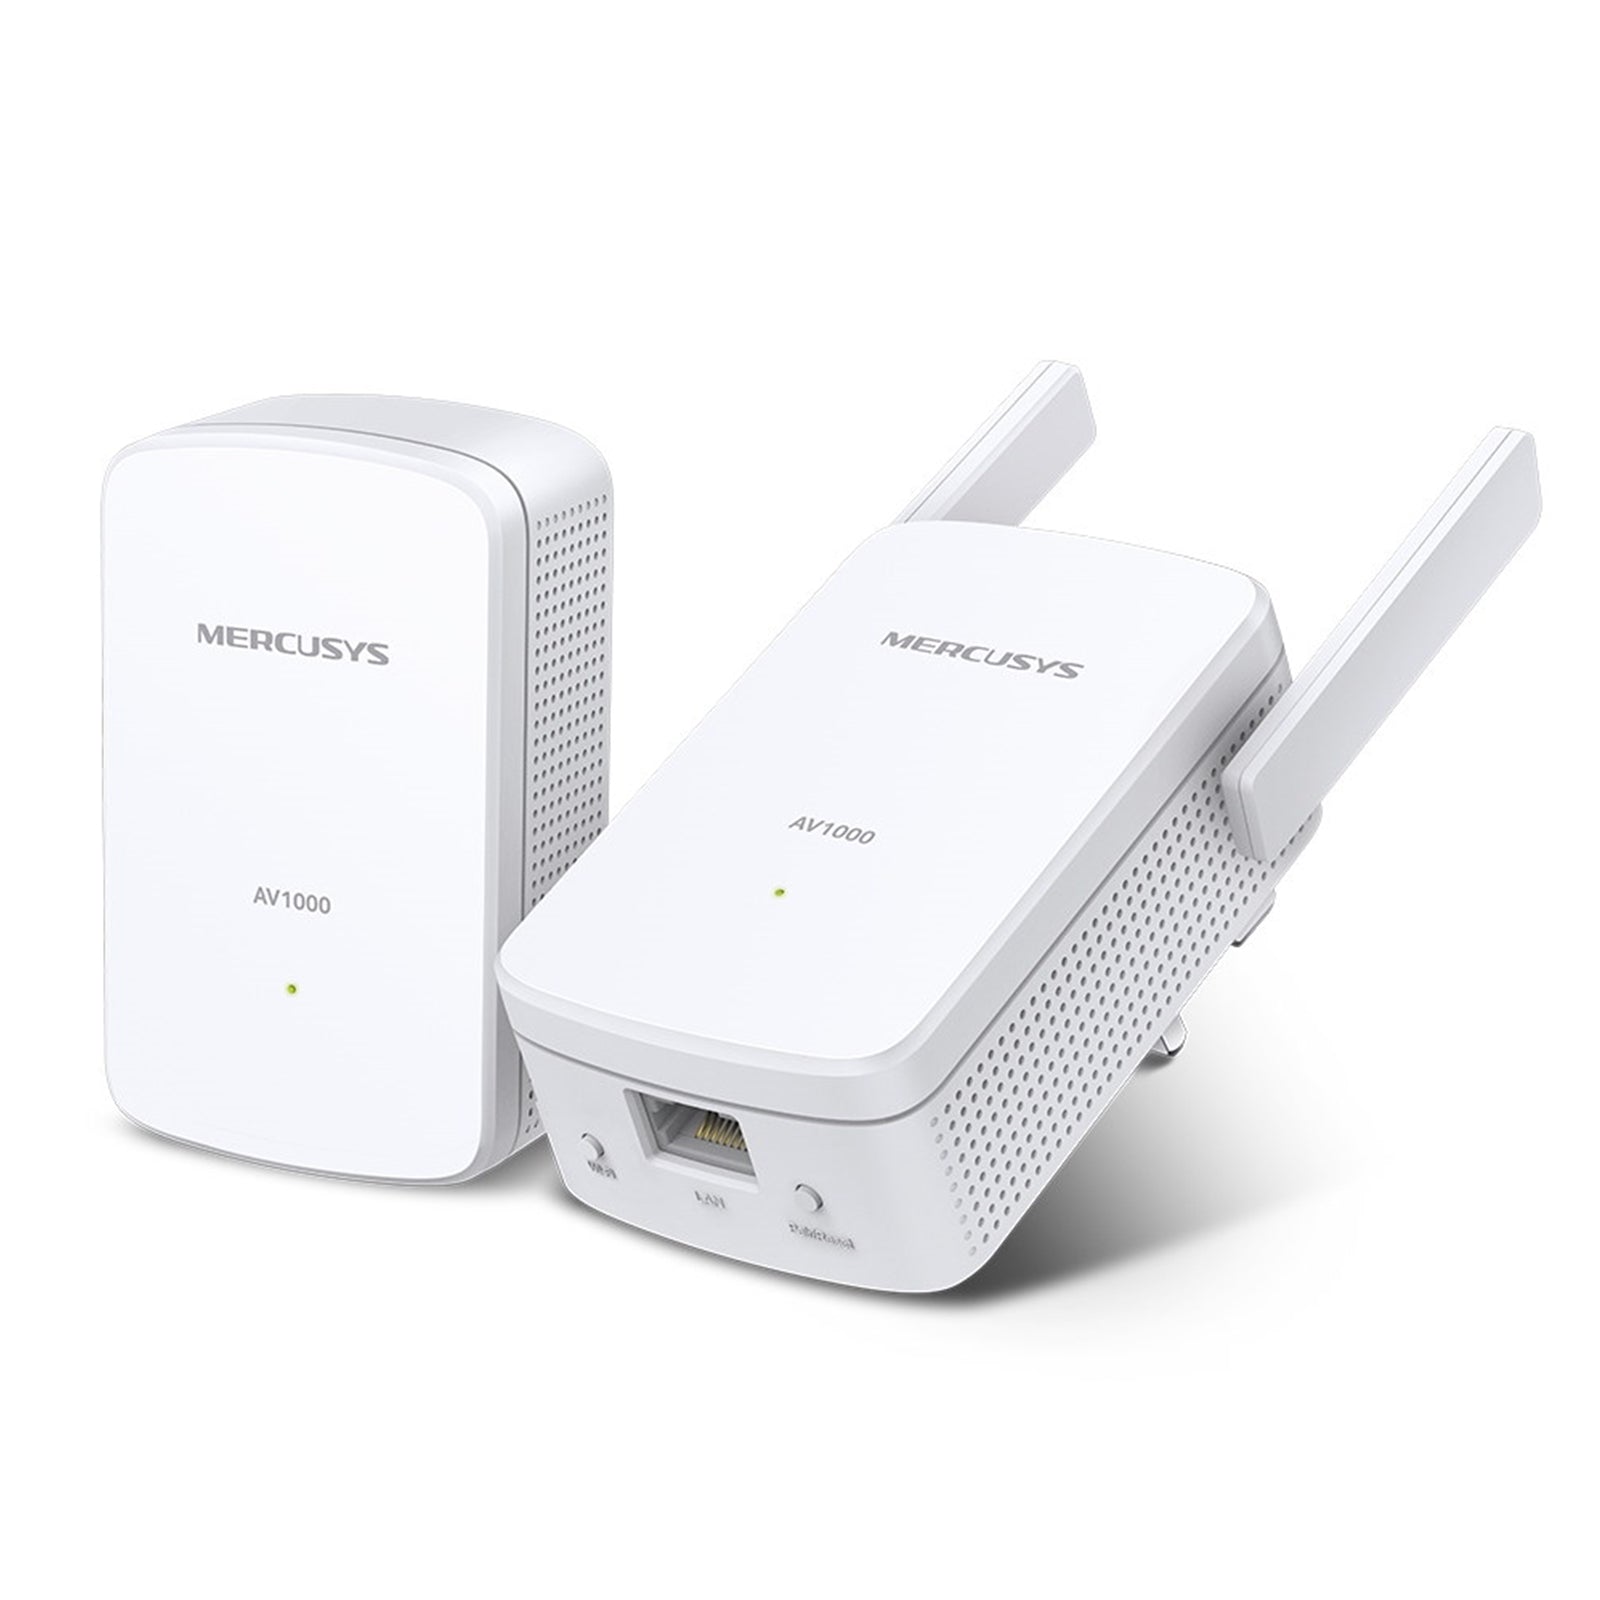 Mercusys AV1000 Gigabit Powerline Wi-Fi Extender Kit with N300 Wireless